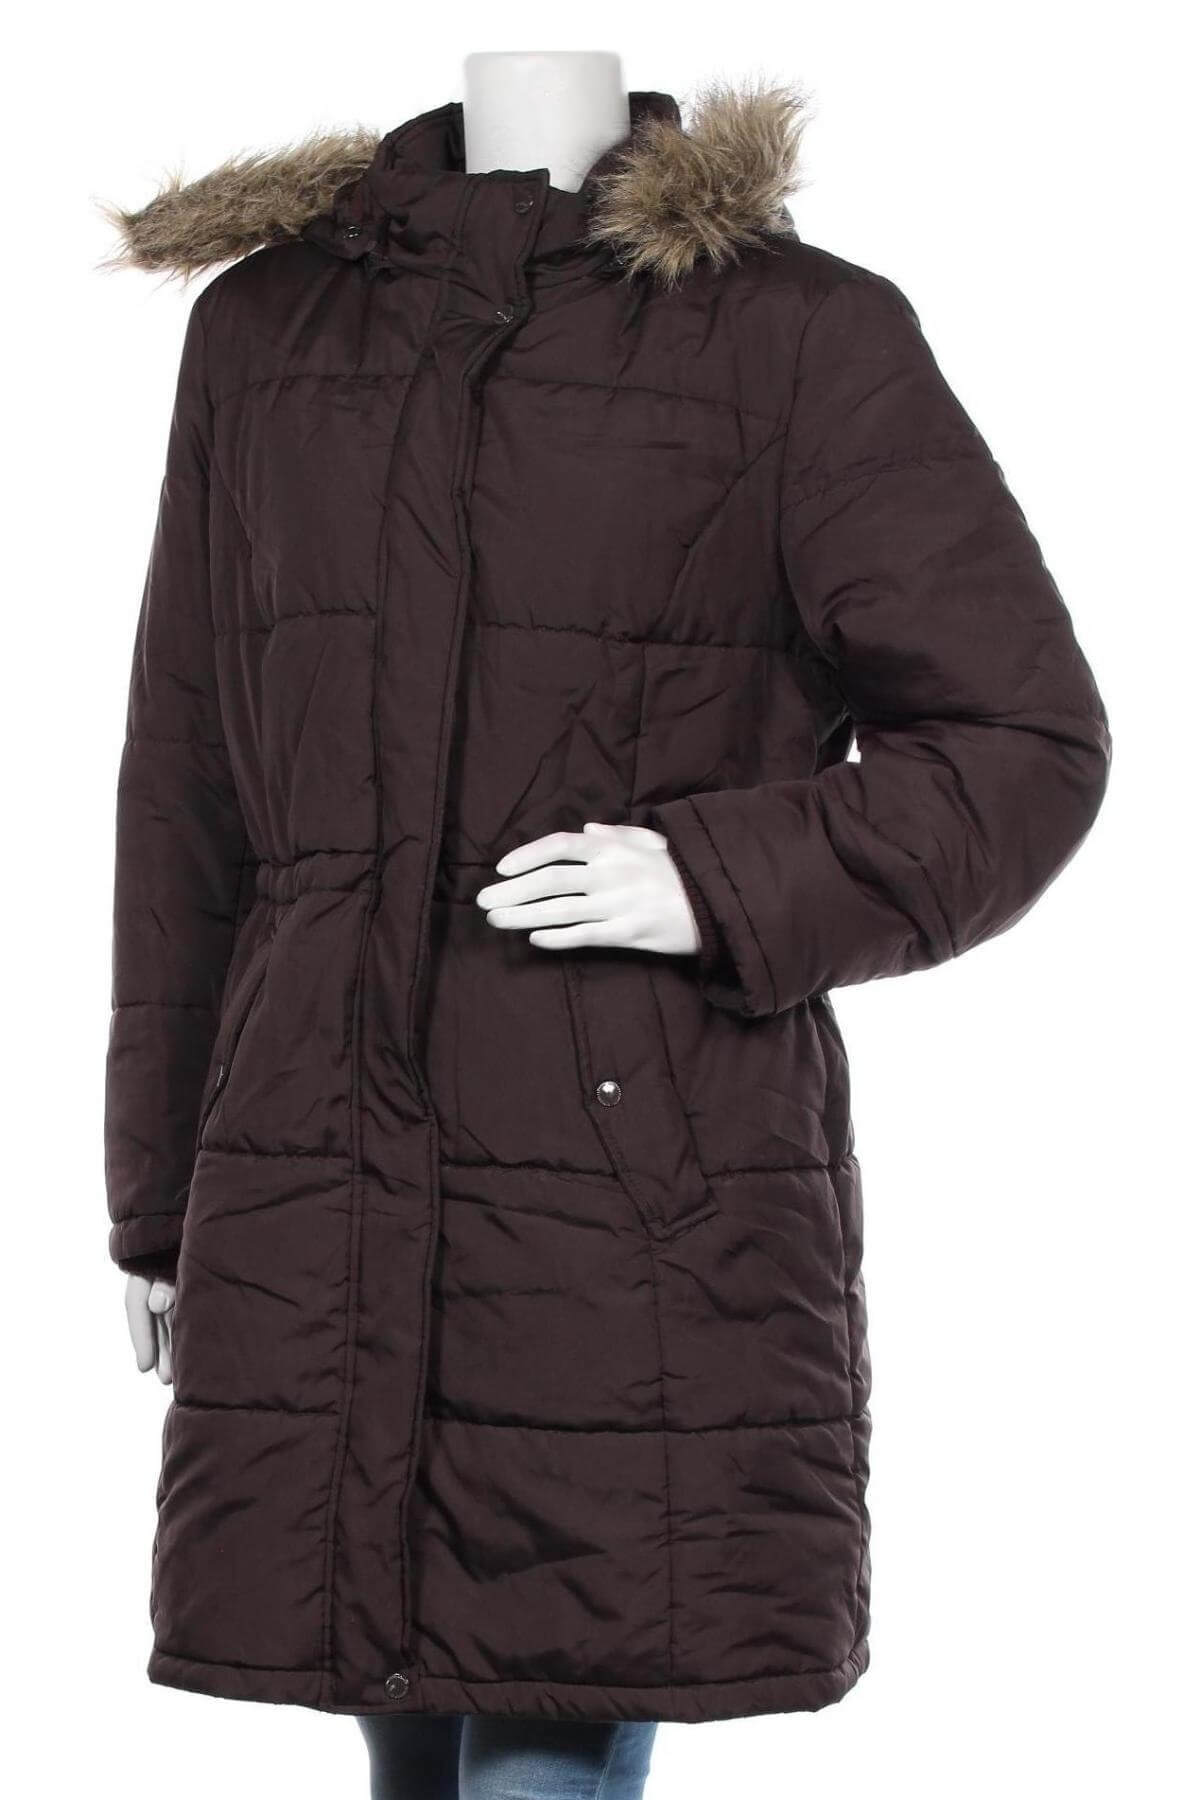 Dámská zimní bunda s kapucí - tmavě hnědá - vel. 40